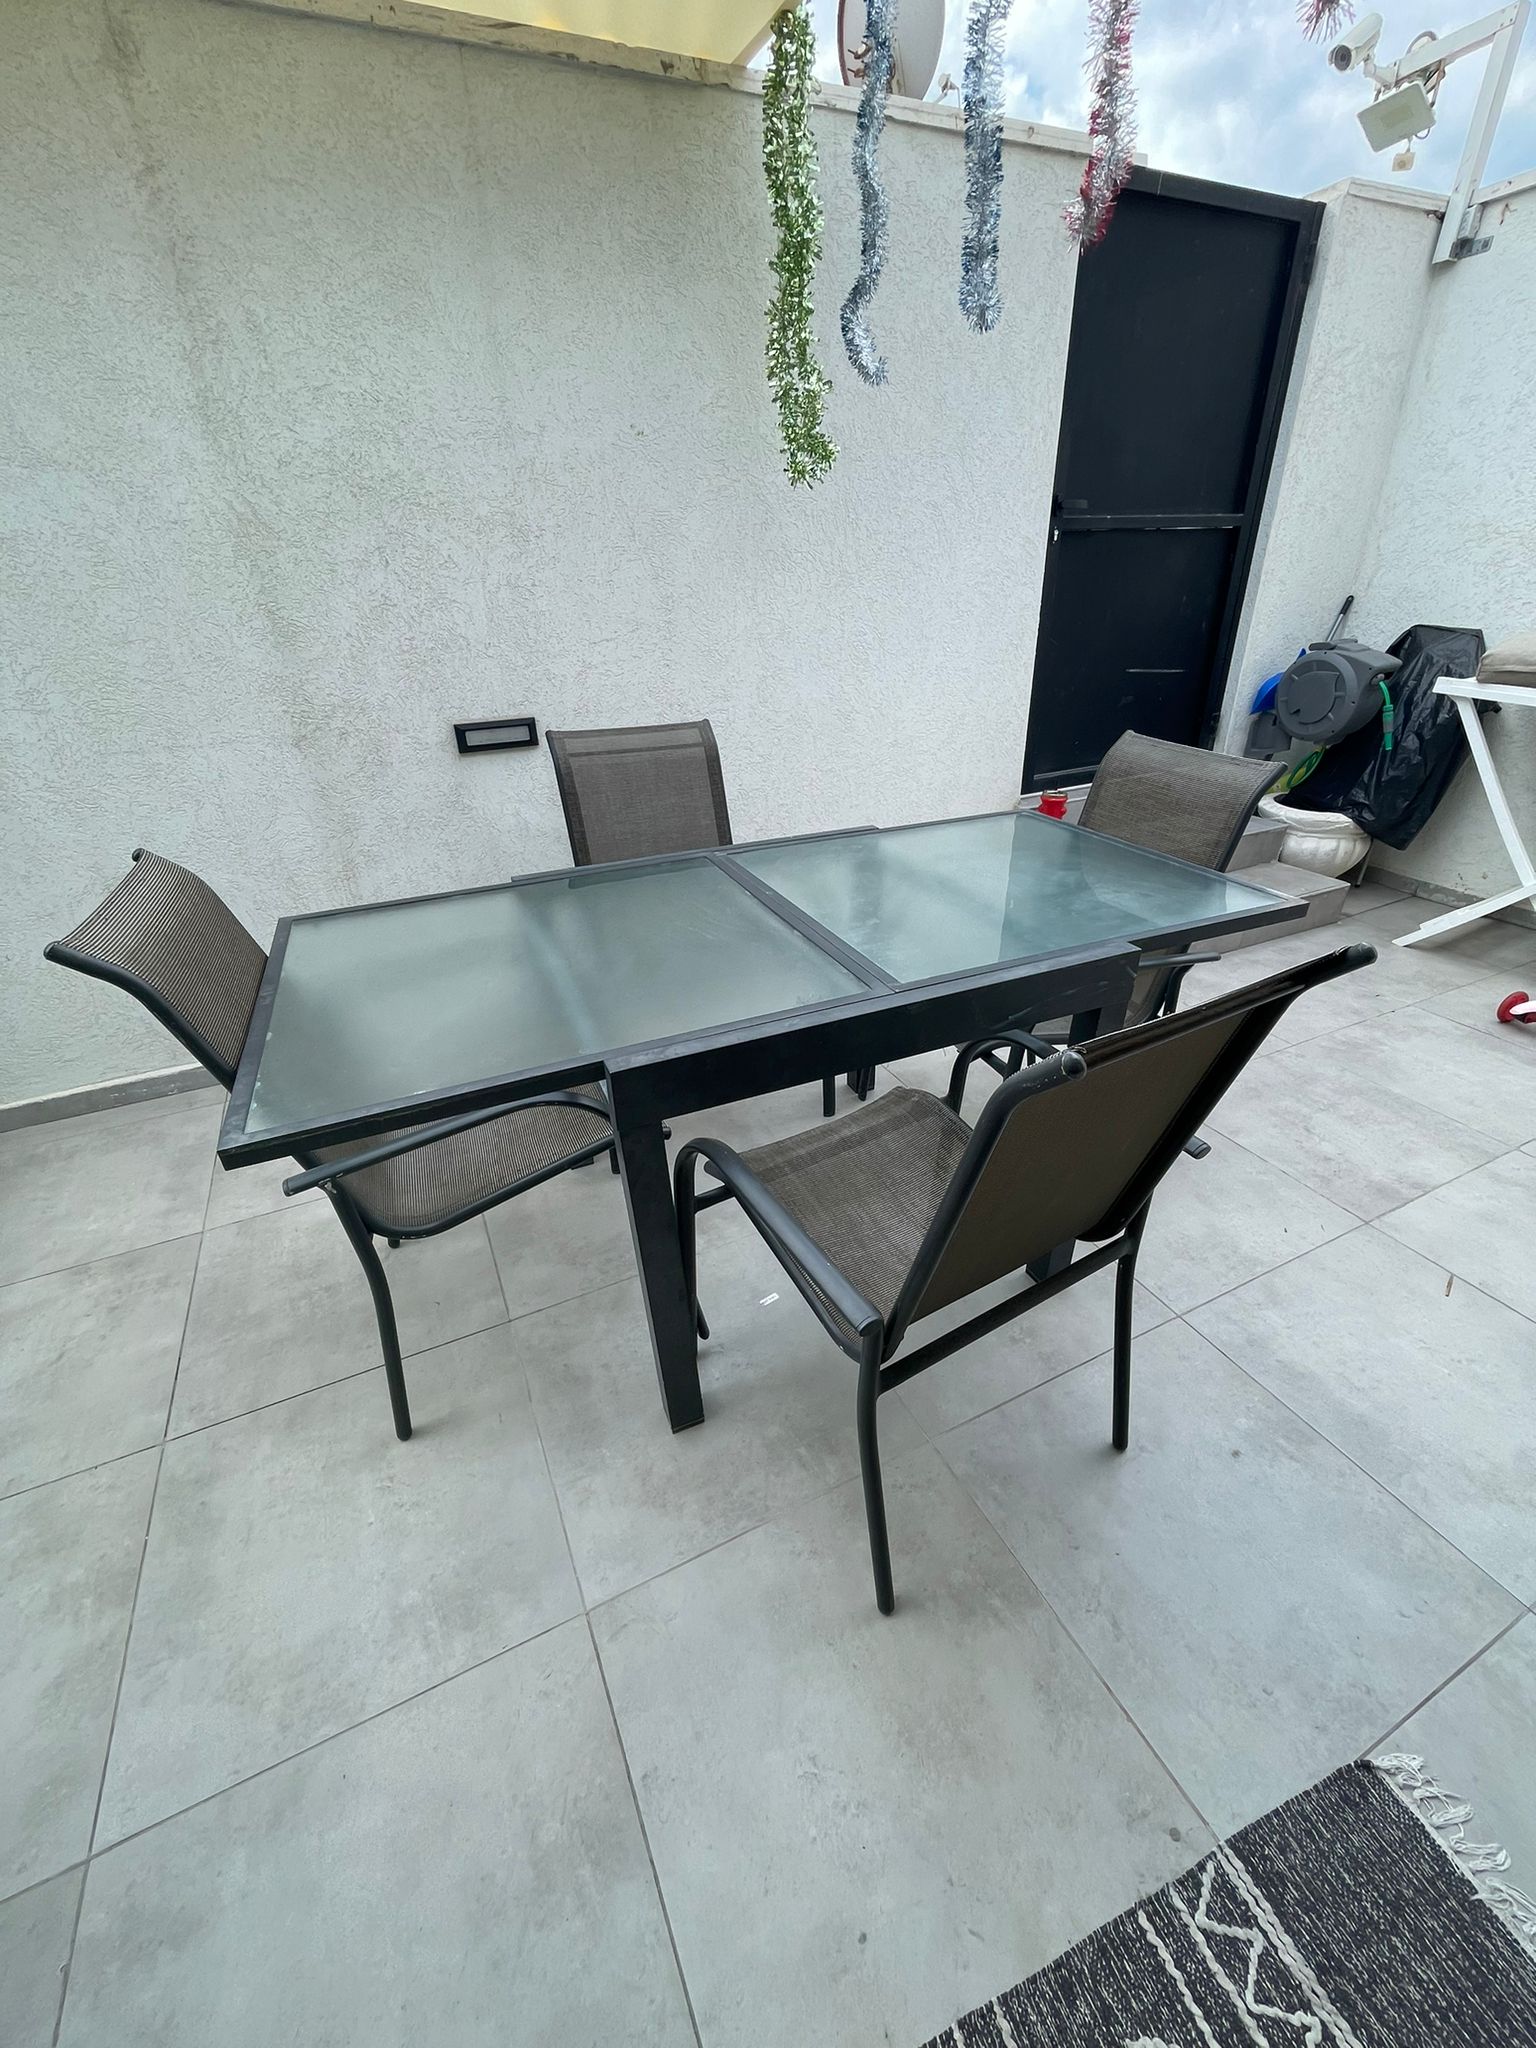 תמונה 1 ,שולחן וכיסאות למכירה בחדרה לגינה  ריהוט לגינה